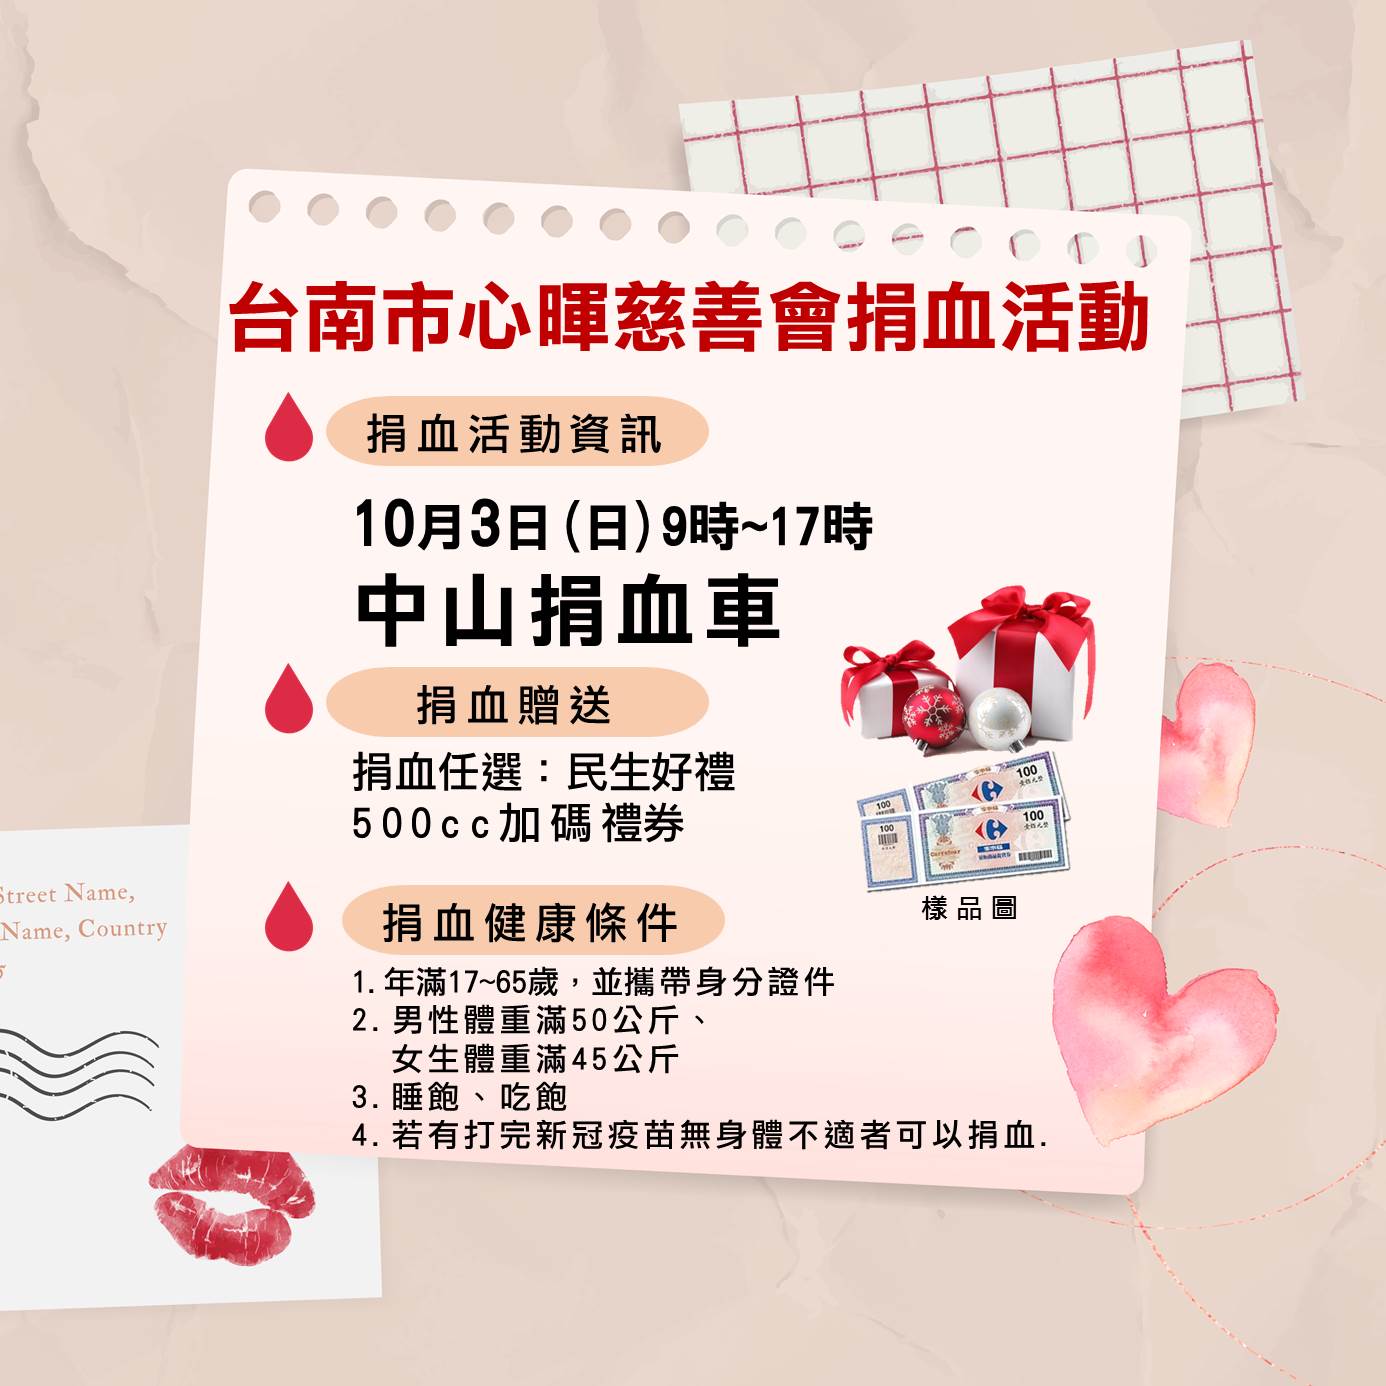 圖 台南和緯捐血感想